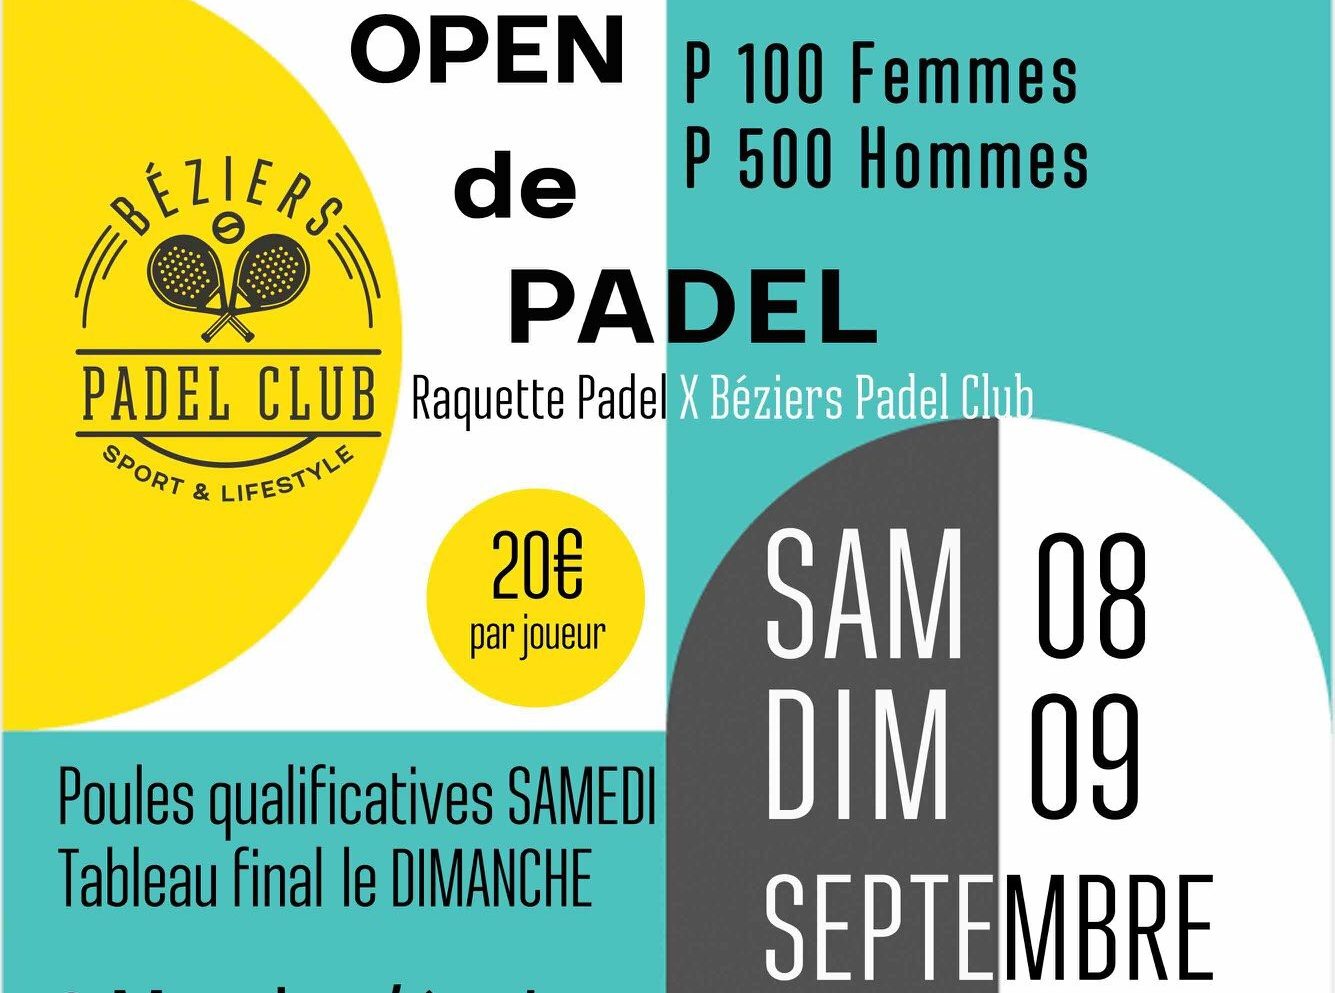 Los Béziers Padel Club ofrece su 1er gran torneo padel